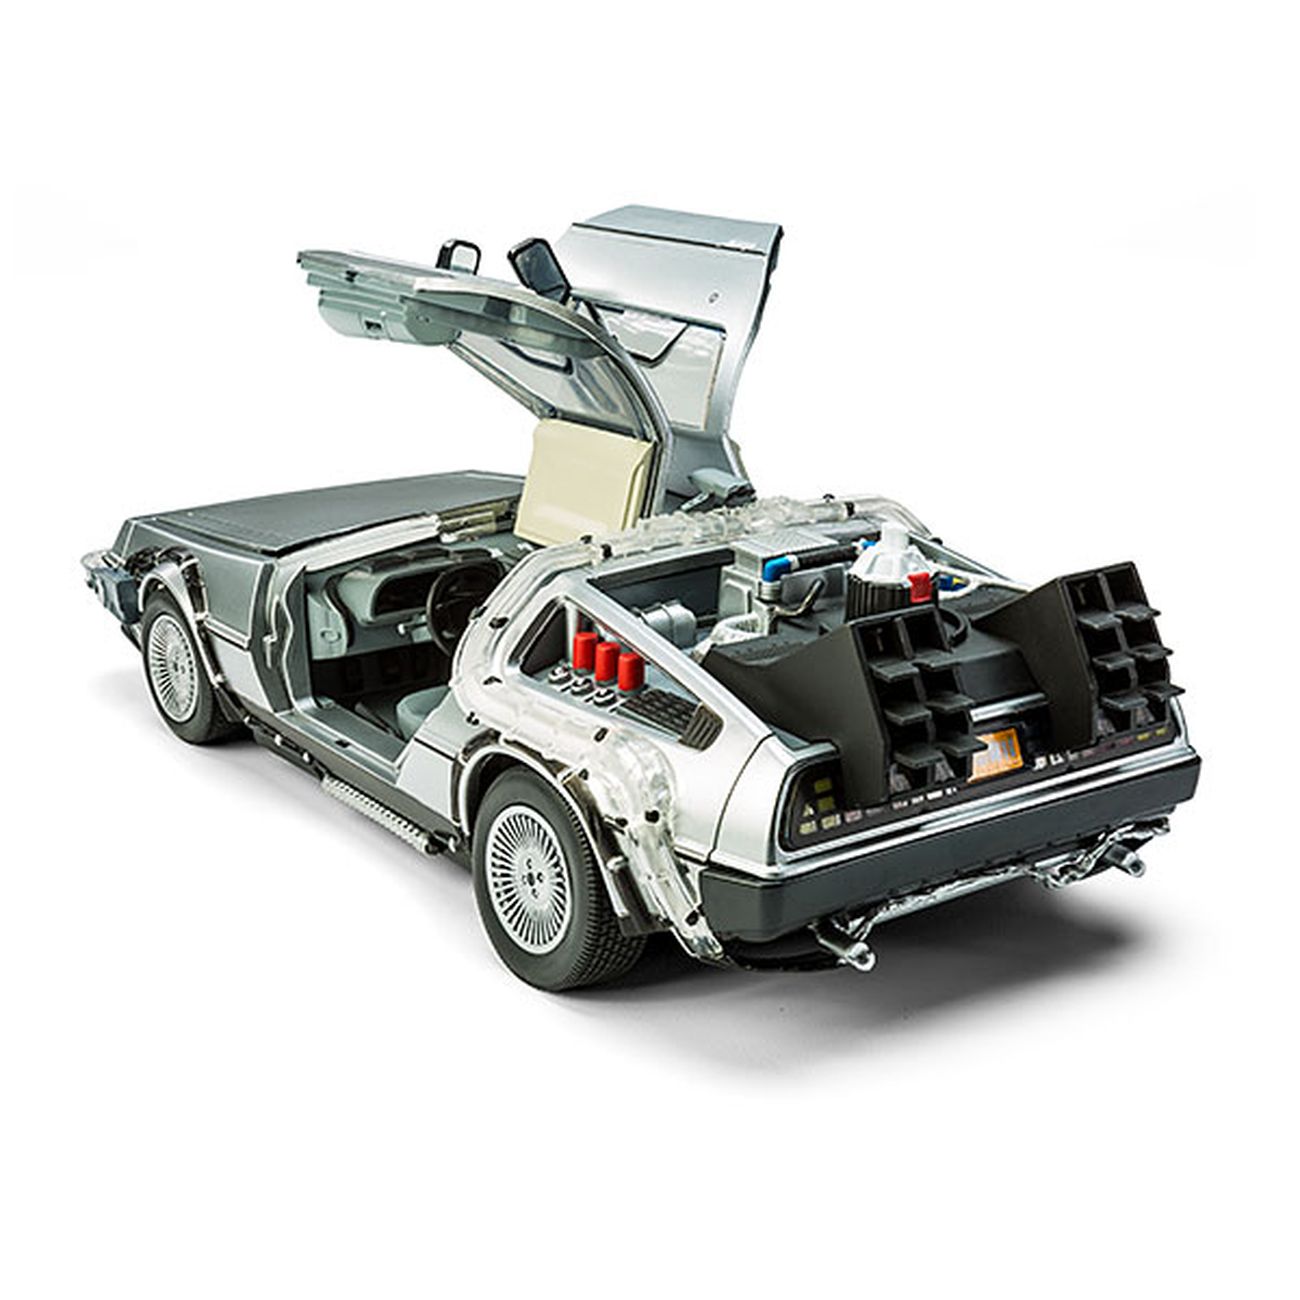 La DeLorean di Ritorno al futuro in versione miniaturizzata